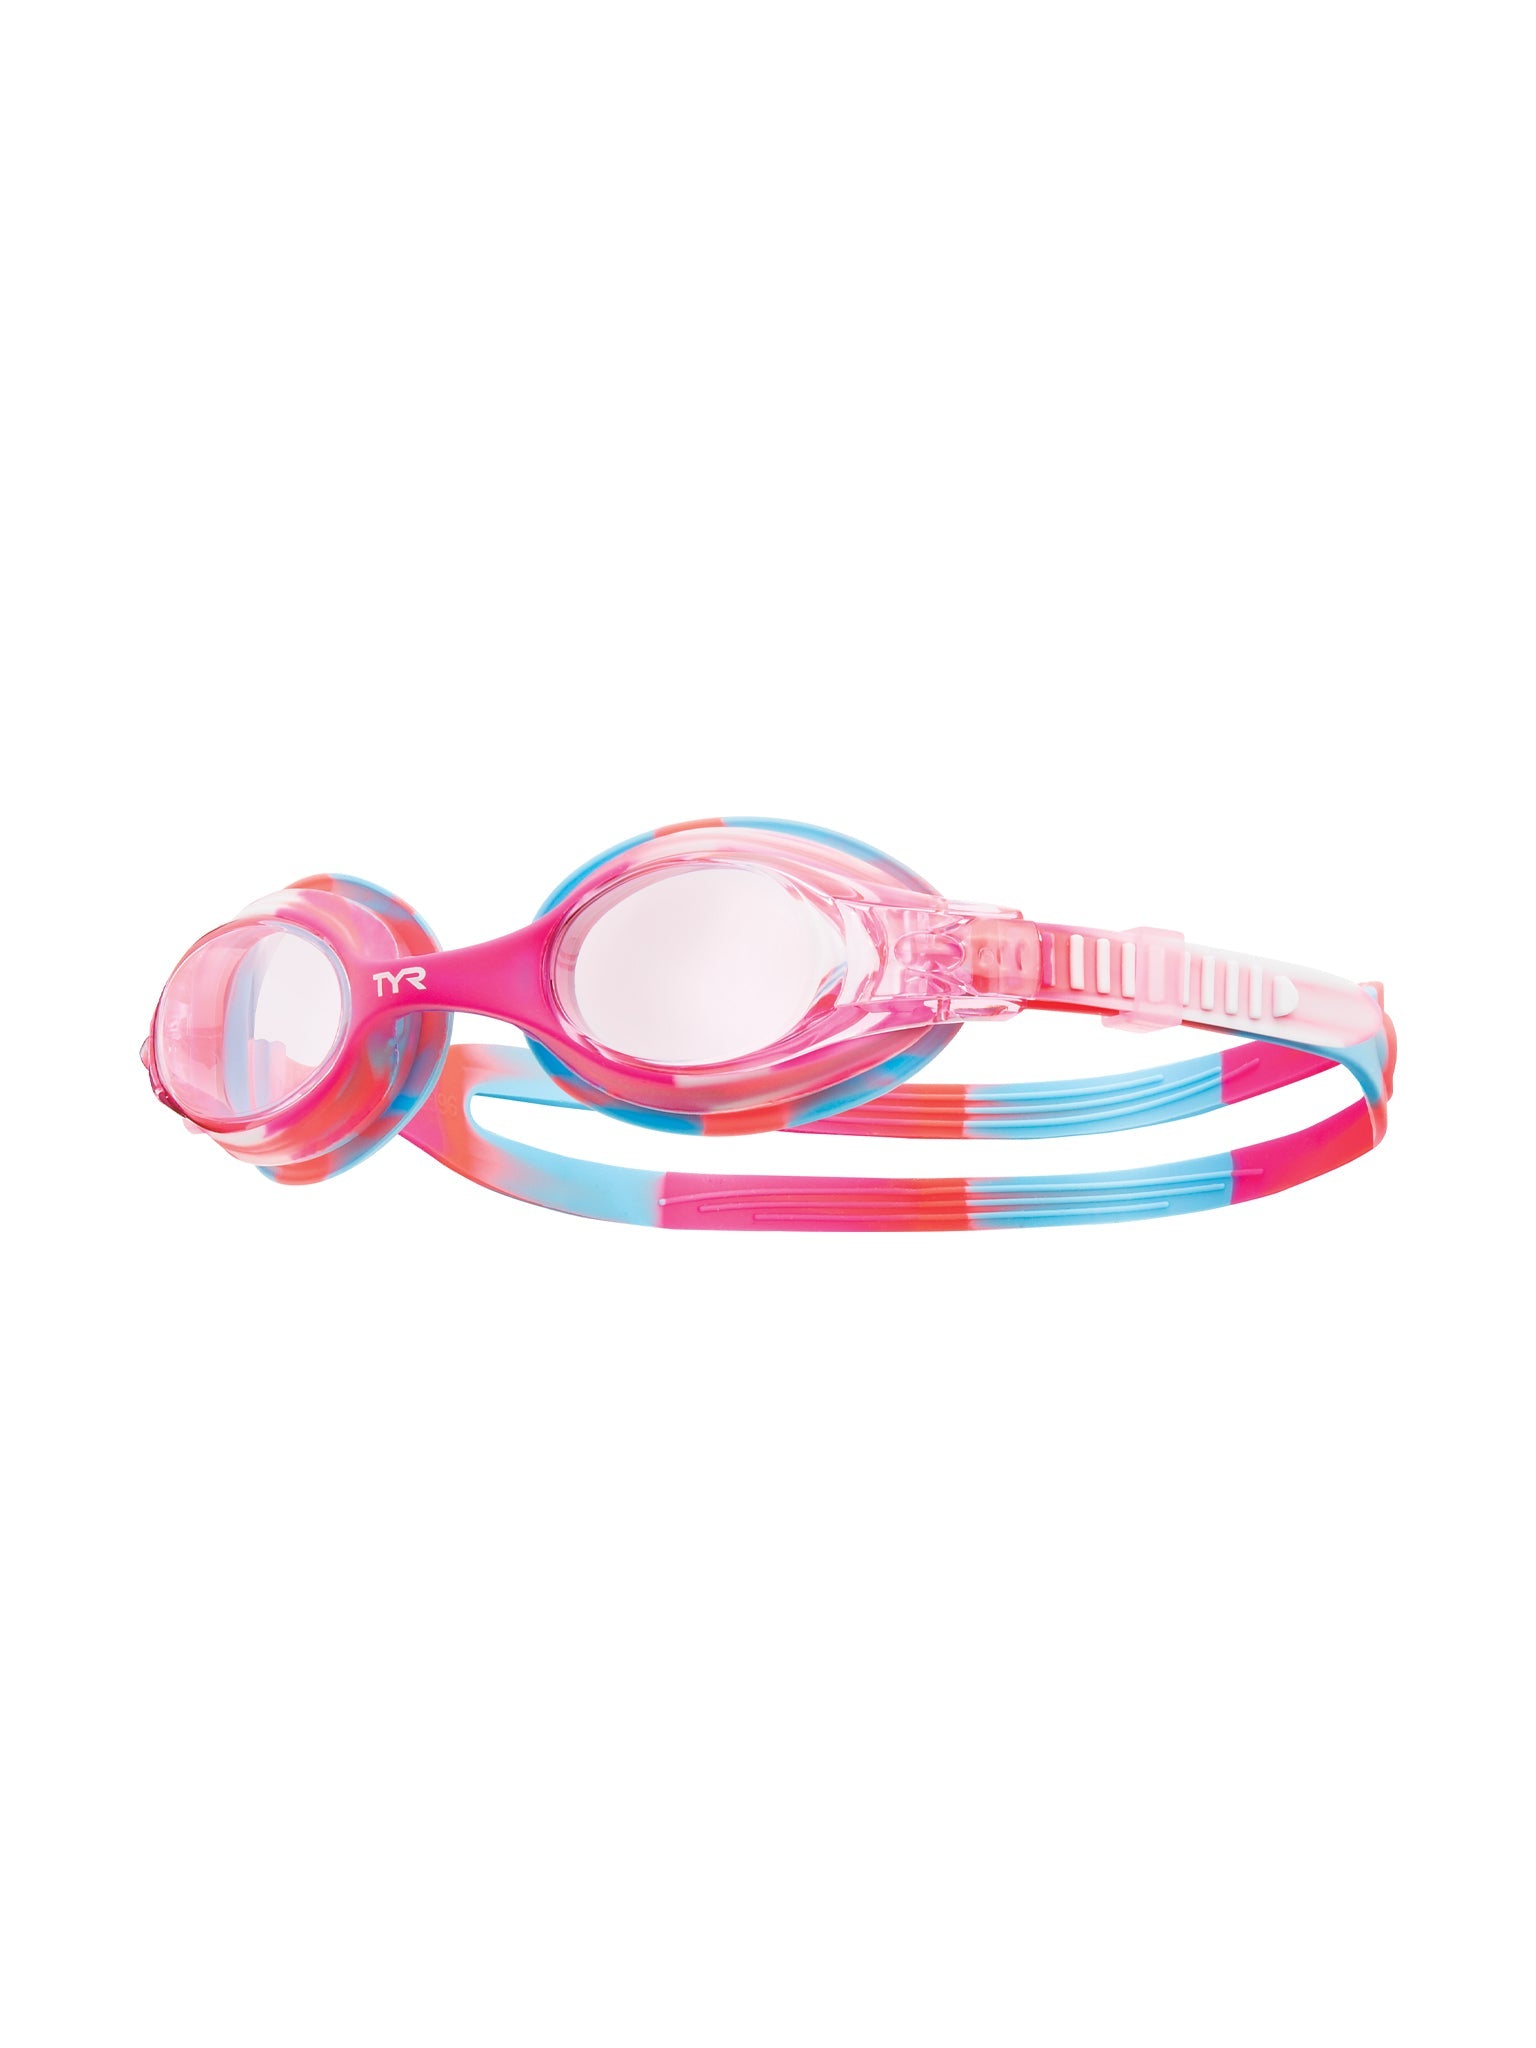 Lunettes de natation Swimple Tie-Dye pour enfants - Blanc/Rose